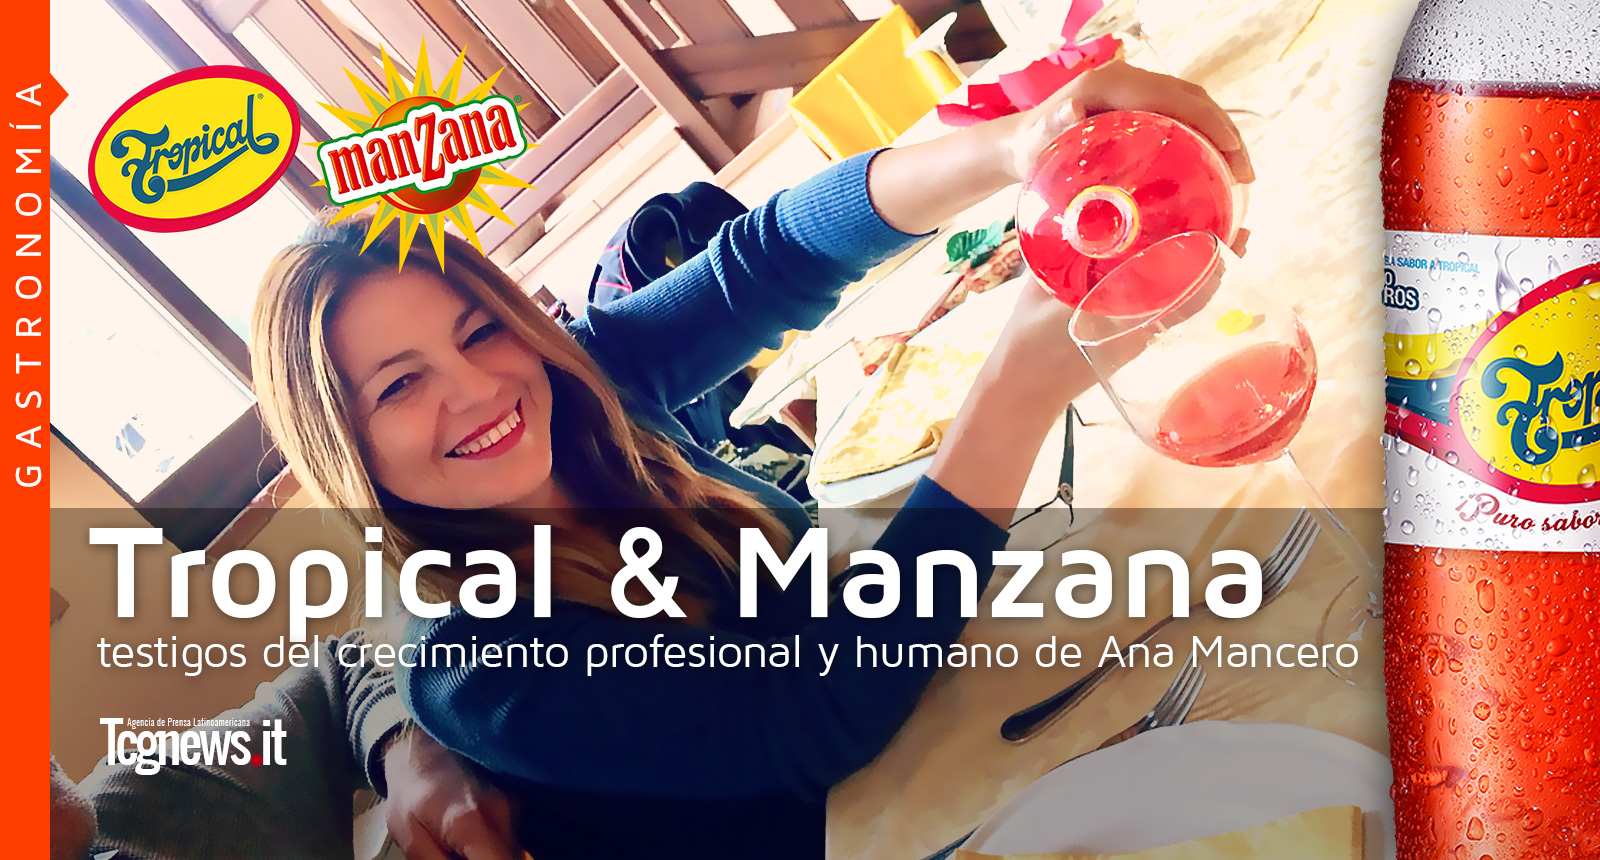 TROPICAL Y MANZANA testigos del crecimiento profesional y humano de Ana Mancero